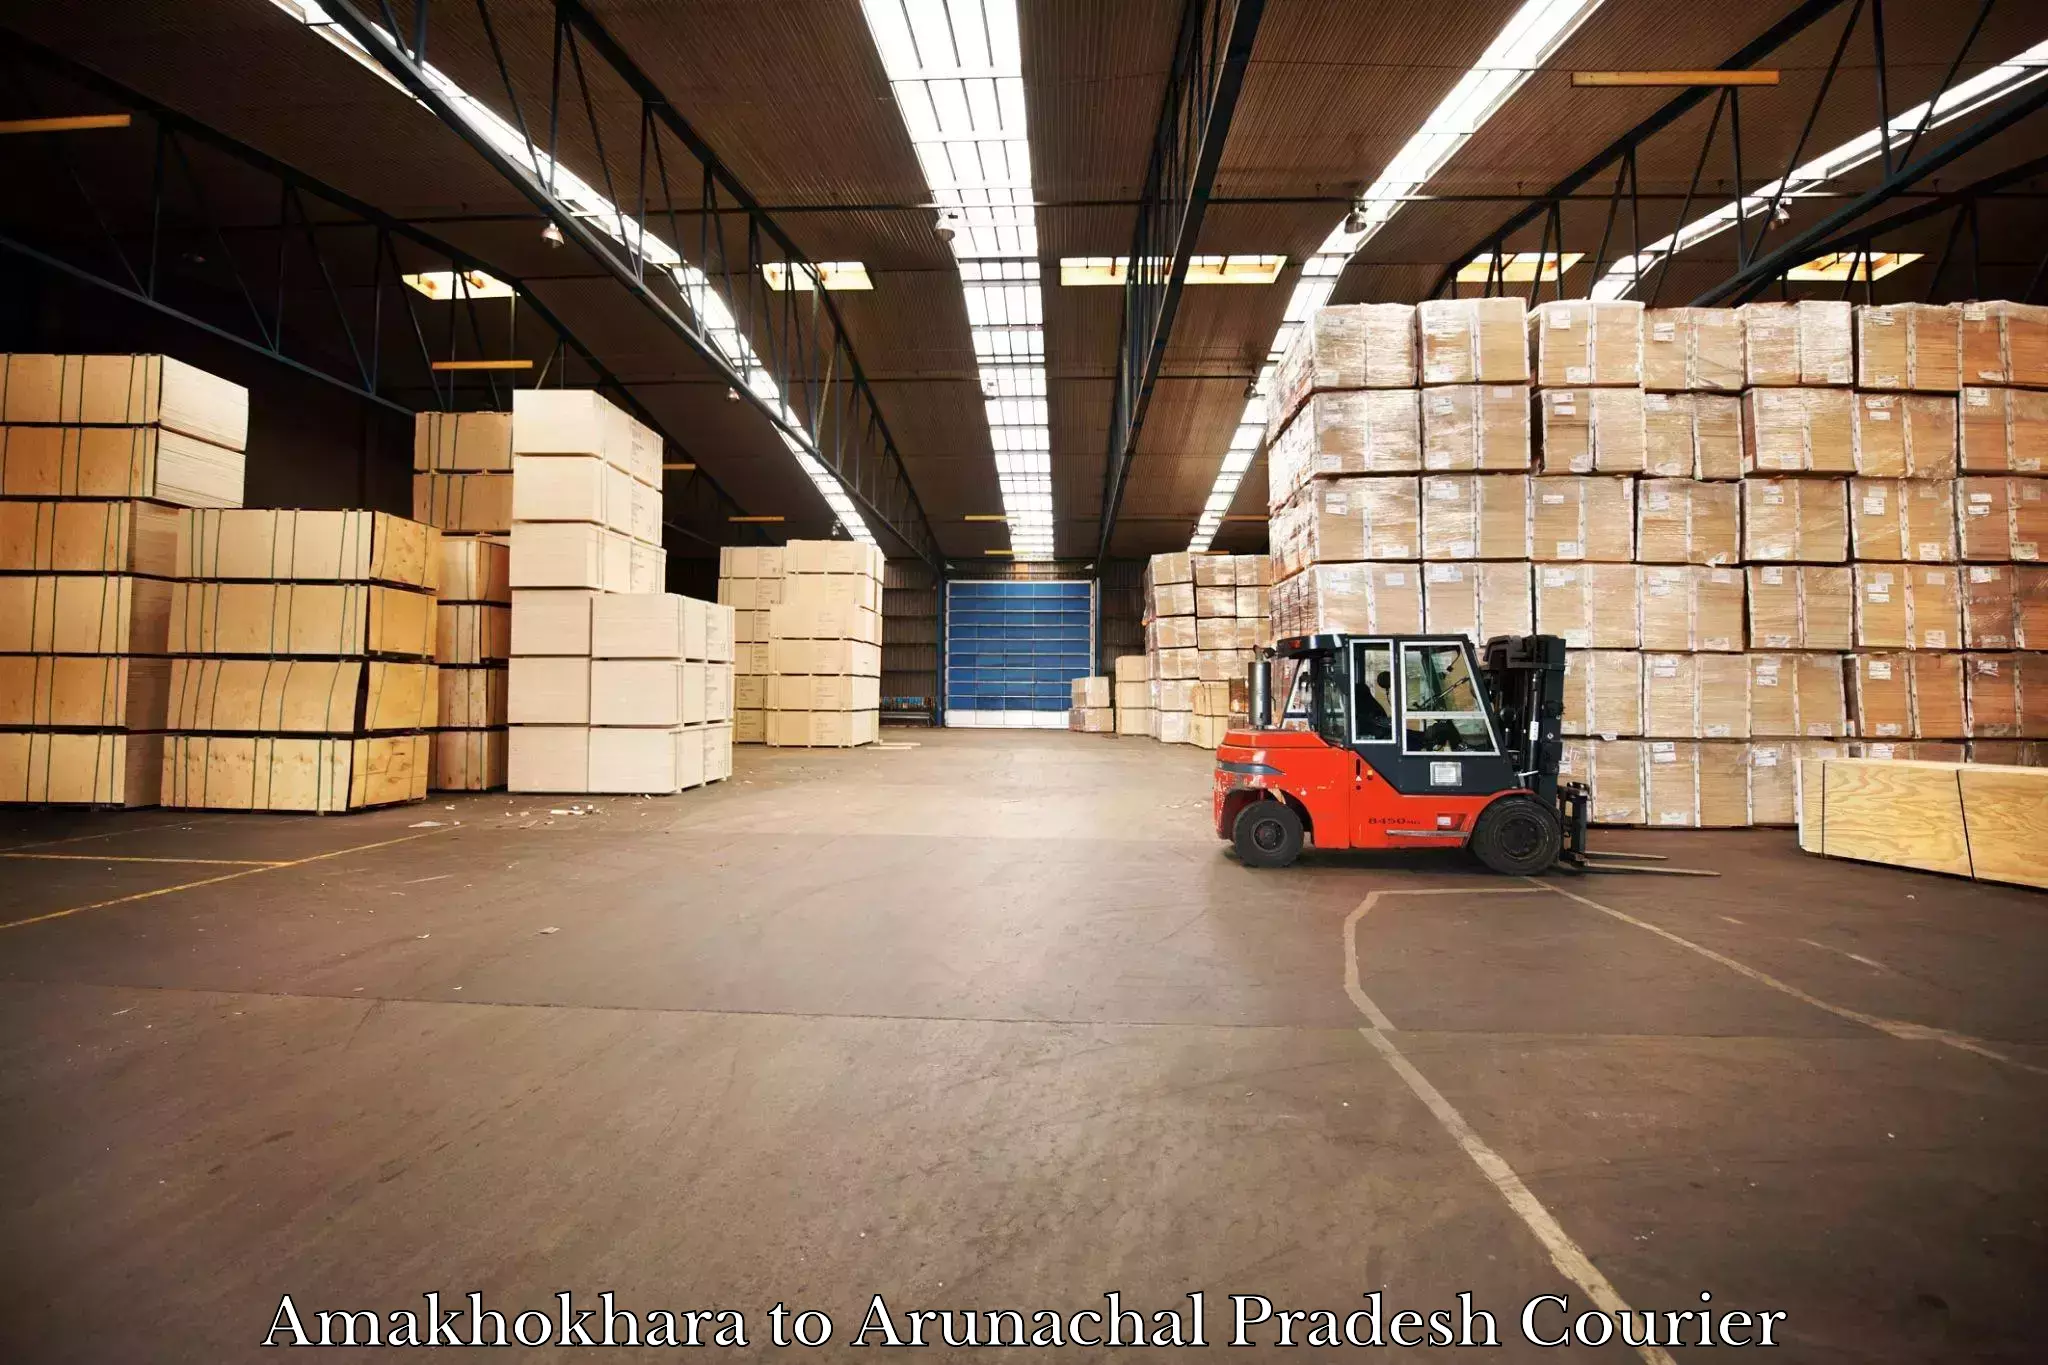 Cargo delivery service Amakhokhara to Kurung Kumey